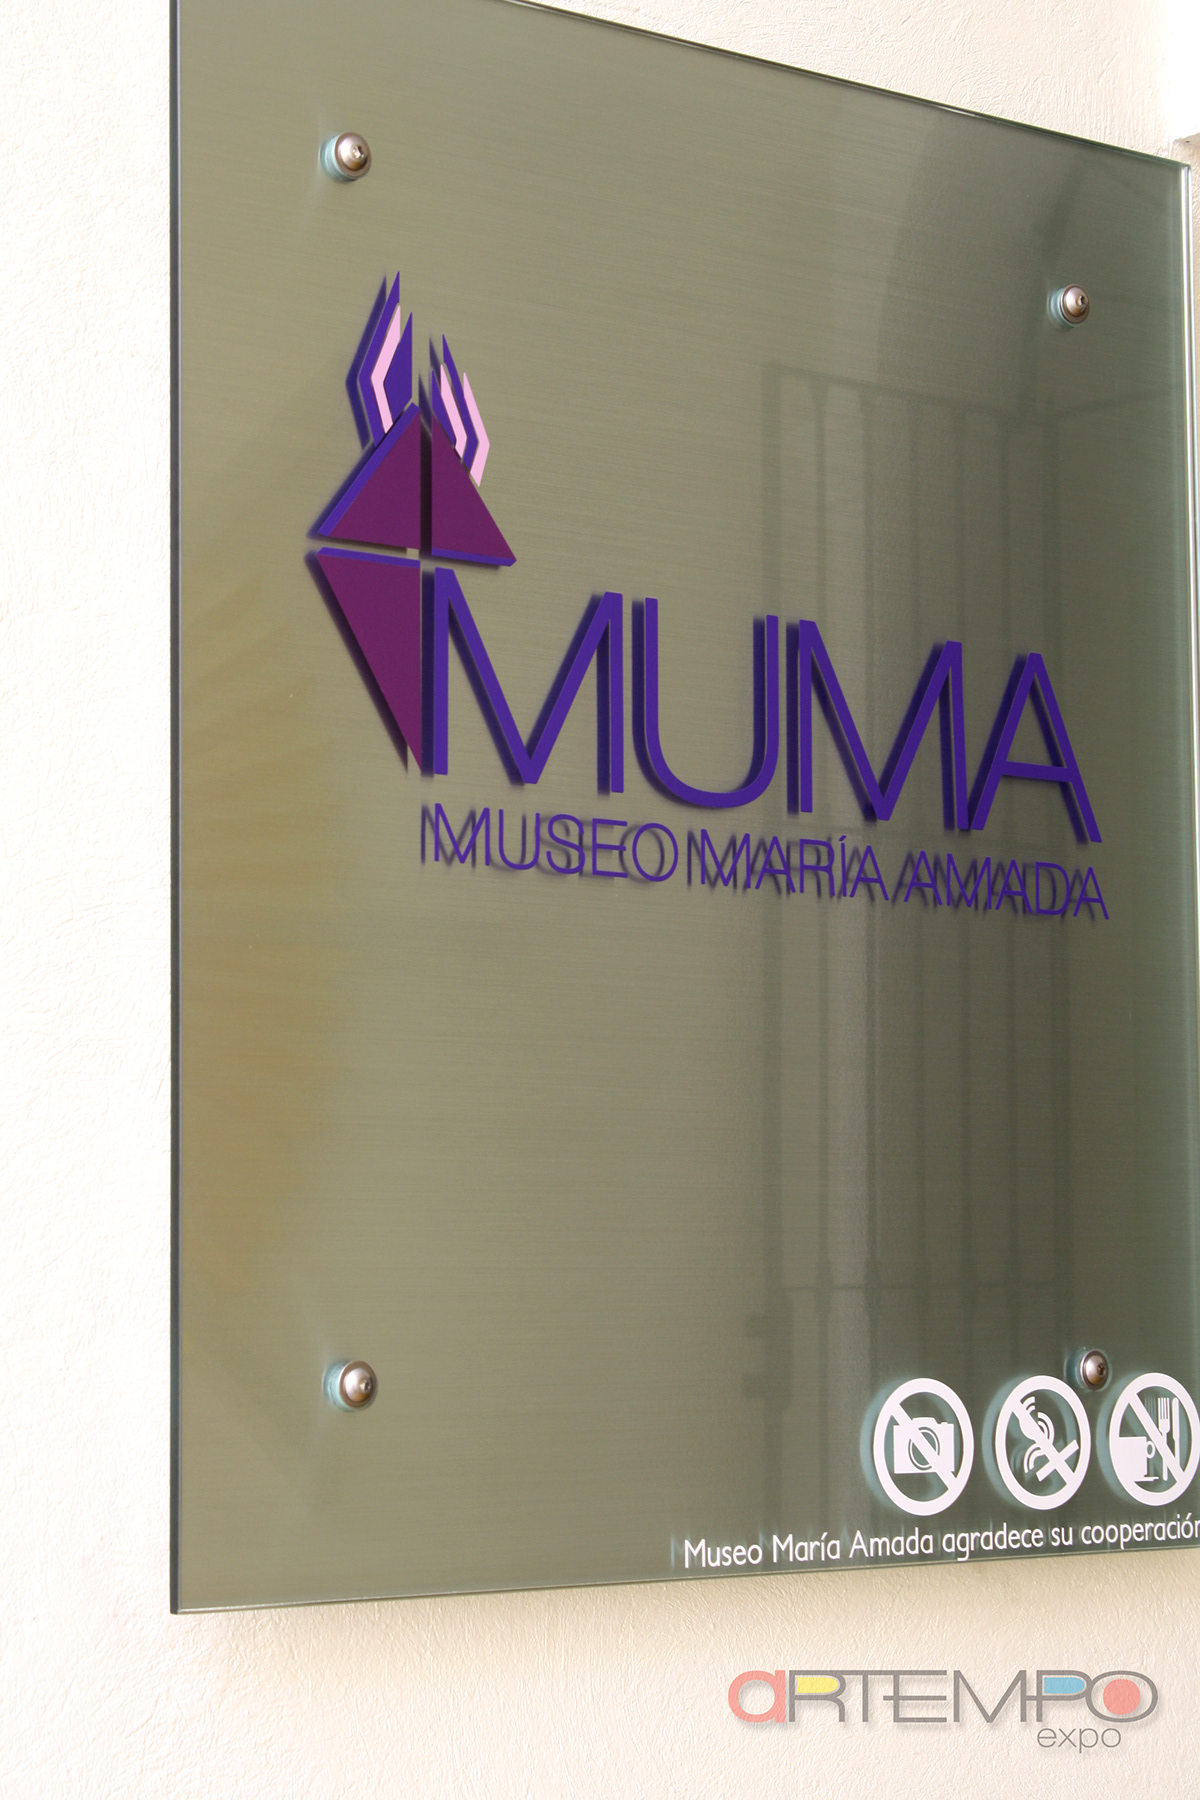 museum museography muma Artempo